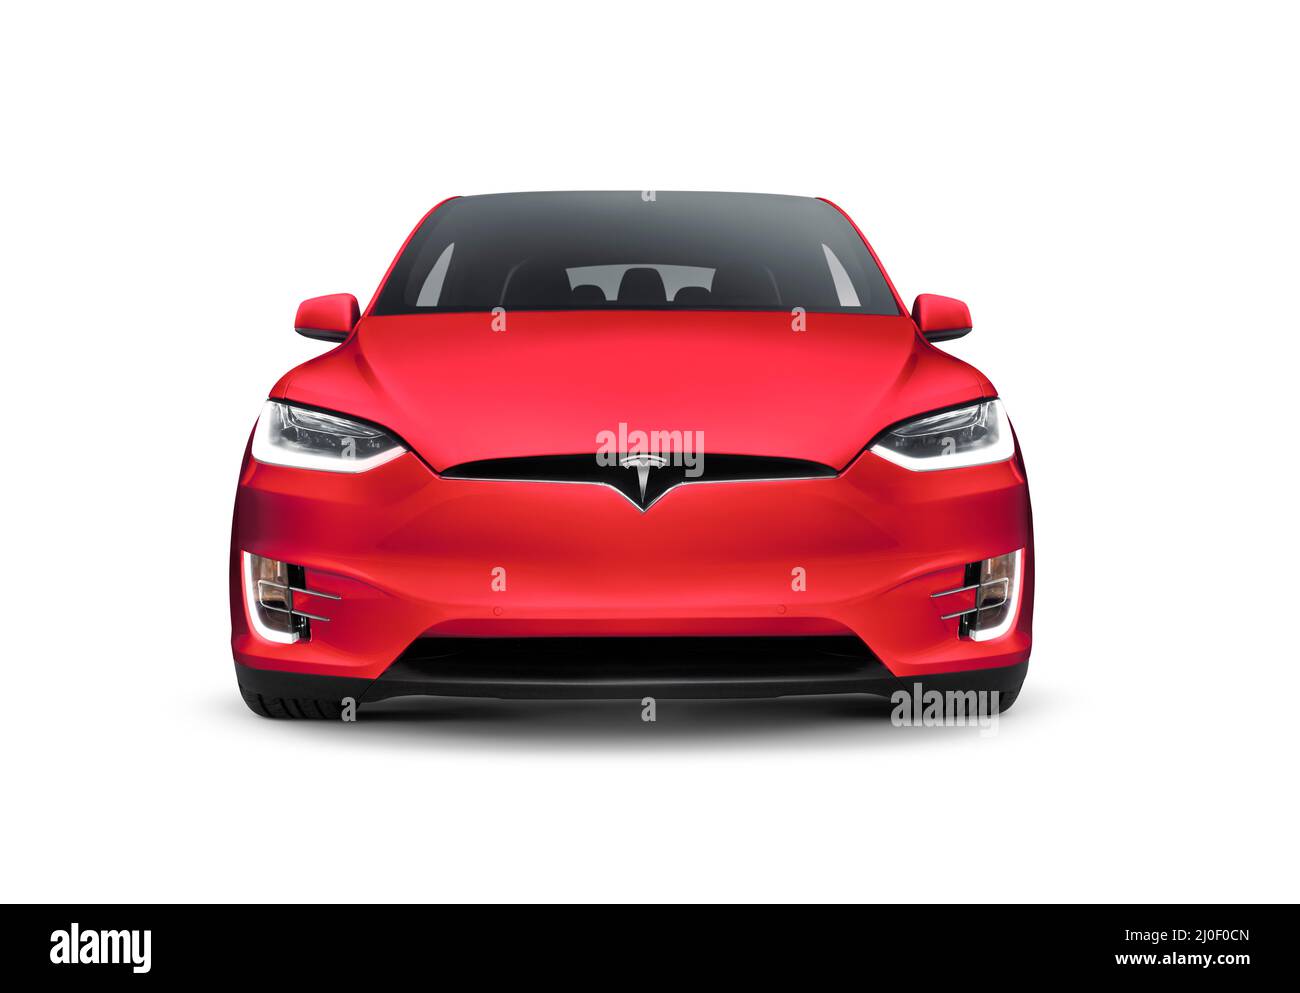 Tesla Model X de color rojo brillante, vista frontal de un coche eléctrico SUV de lujo aislado sobre fondo blanco del estudio Foto de stock